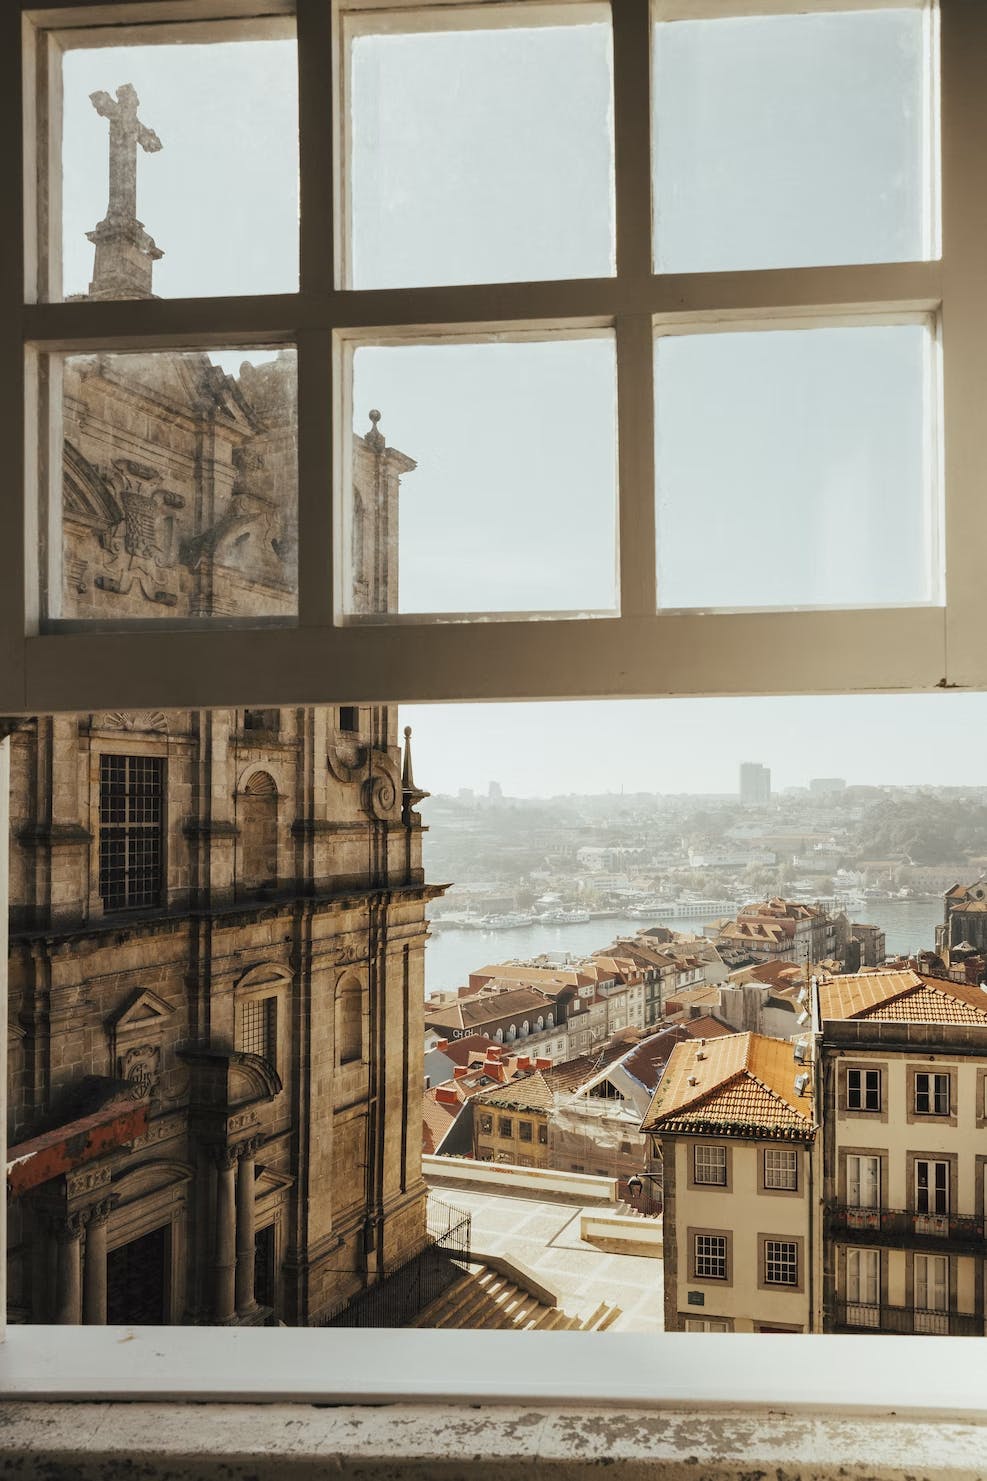 Porto, Portúgal. Mynd tekin af Roya Ann Miller.